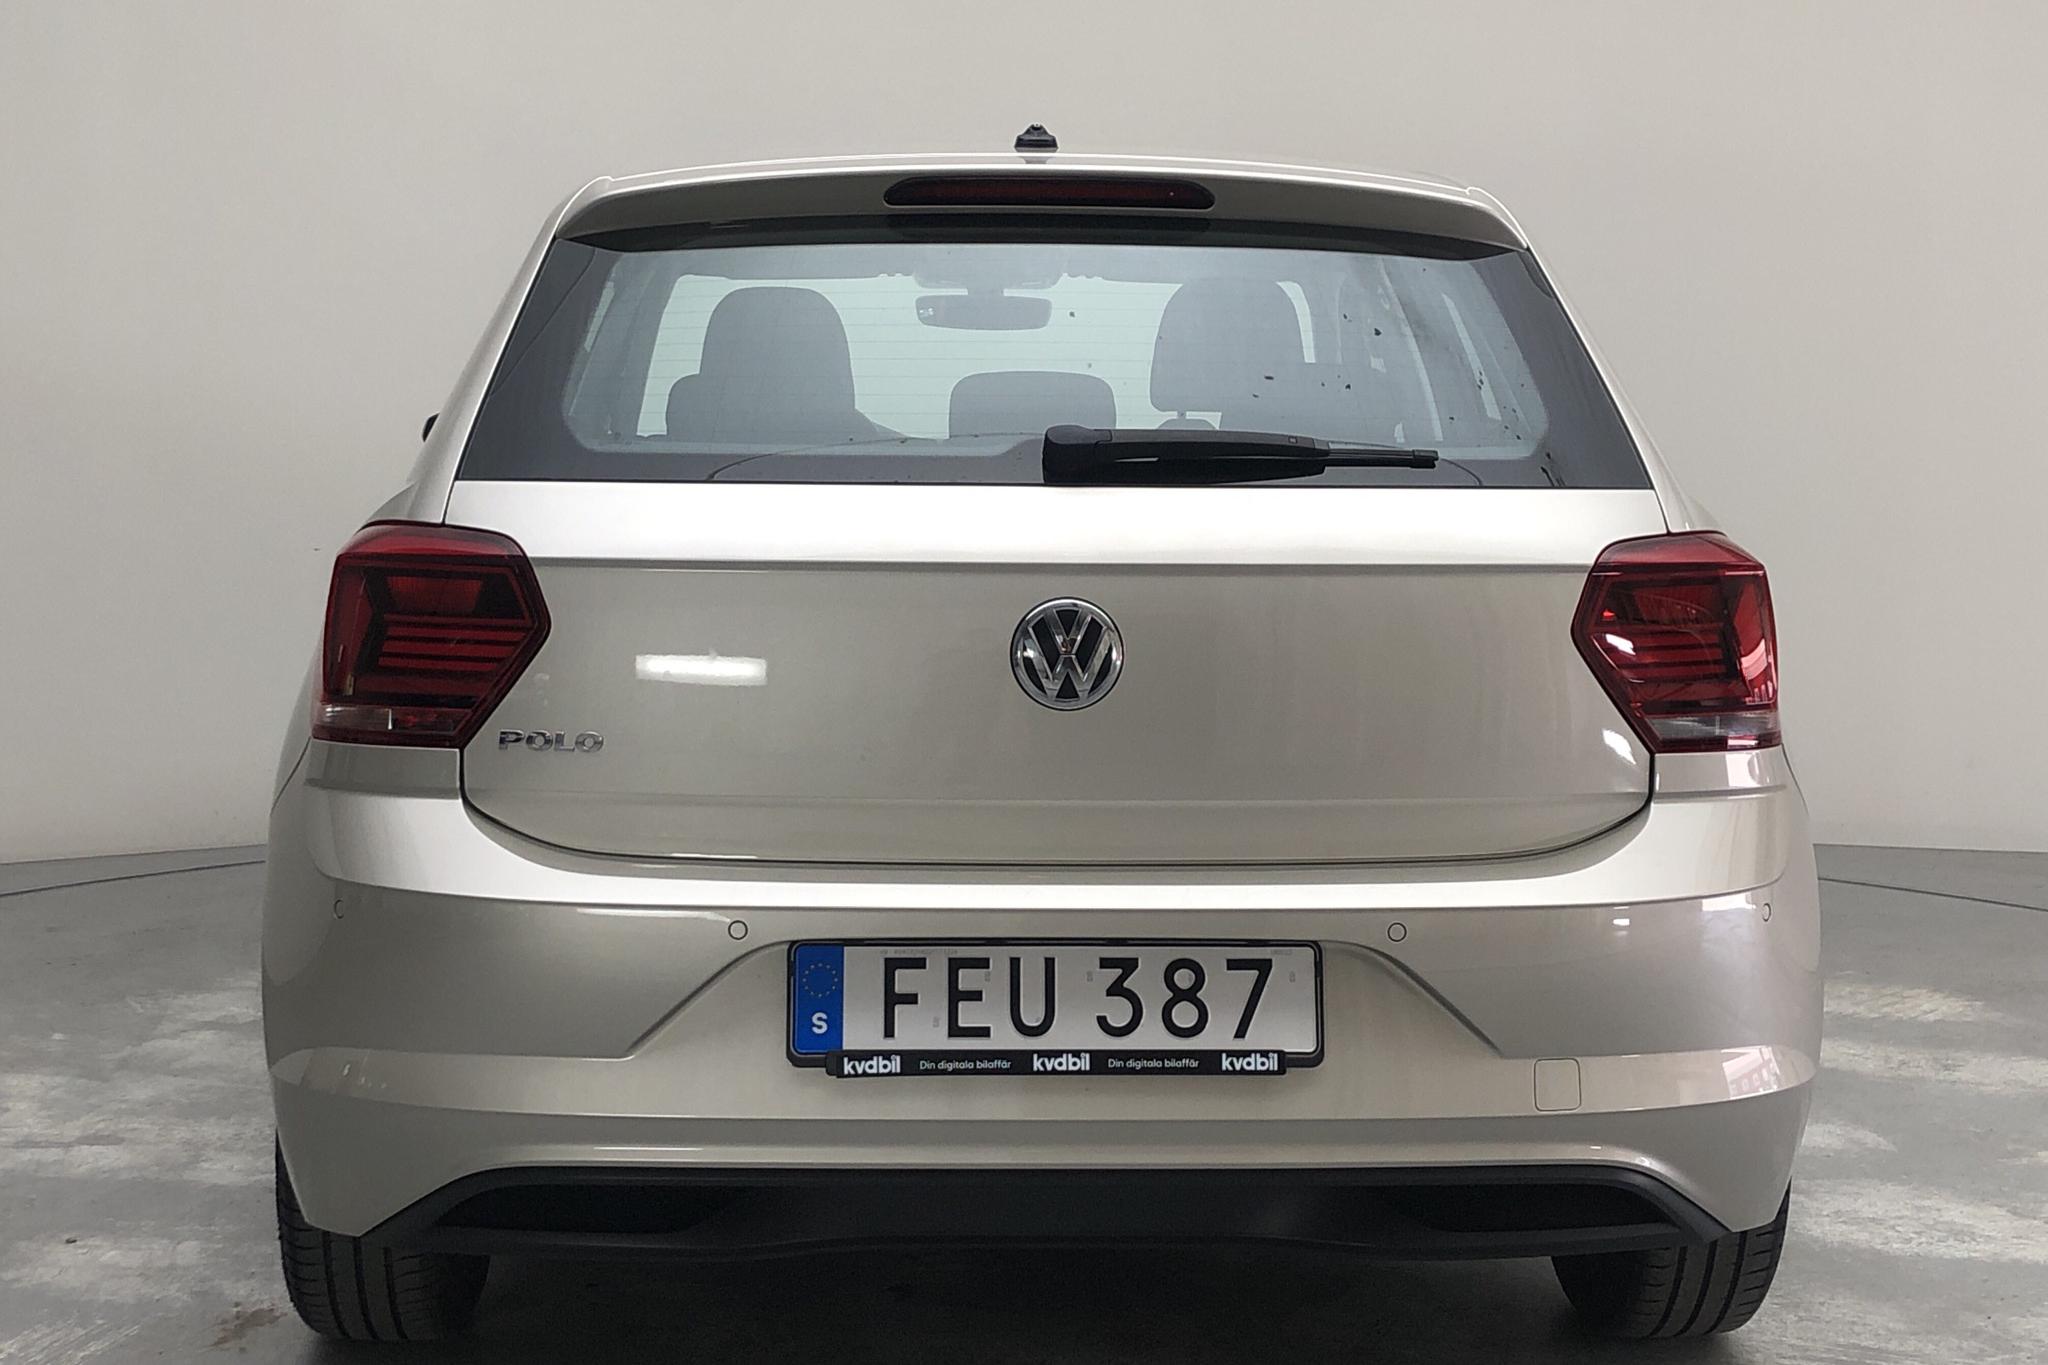 VW Polo 1.0 TSI 5dr (95hk) - 70 480 km - Automatic - 2018